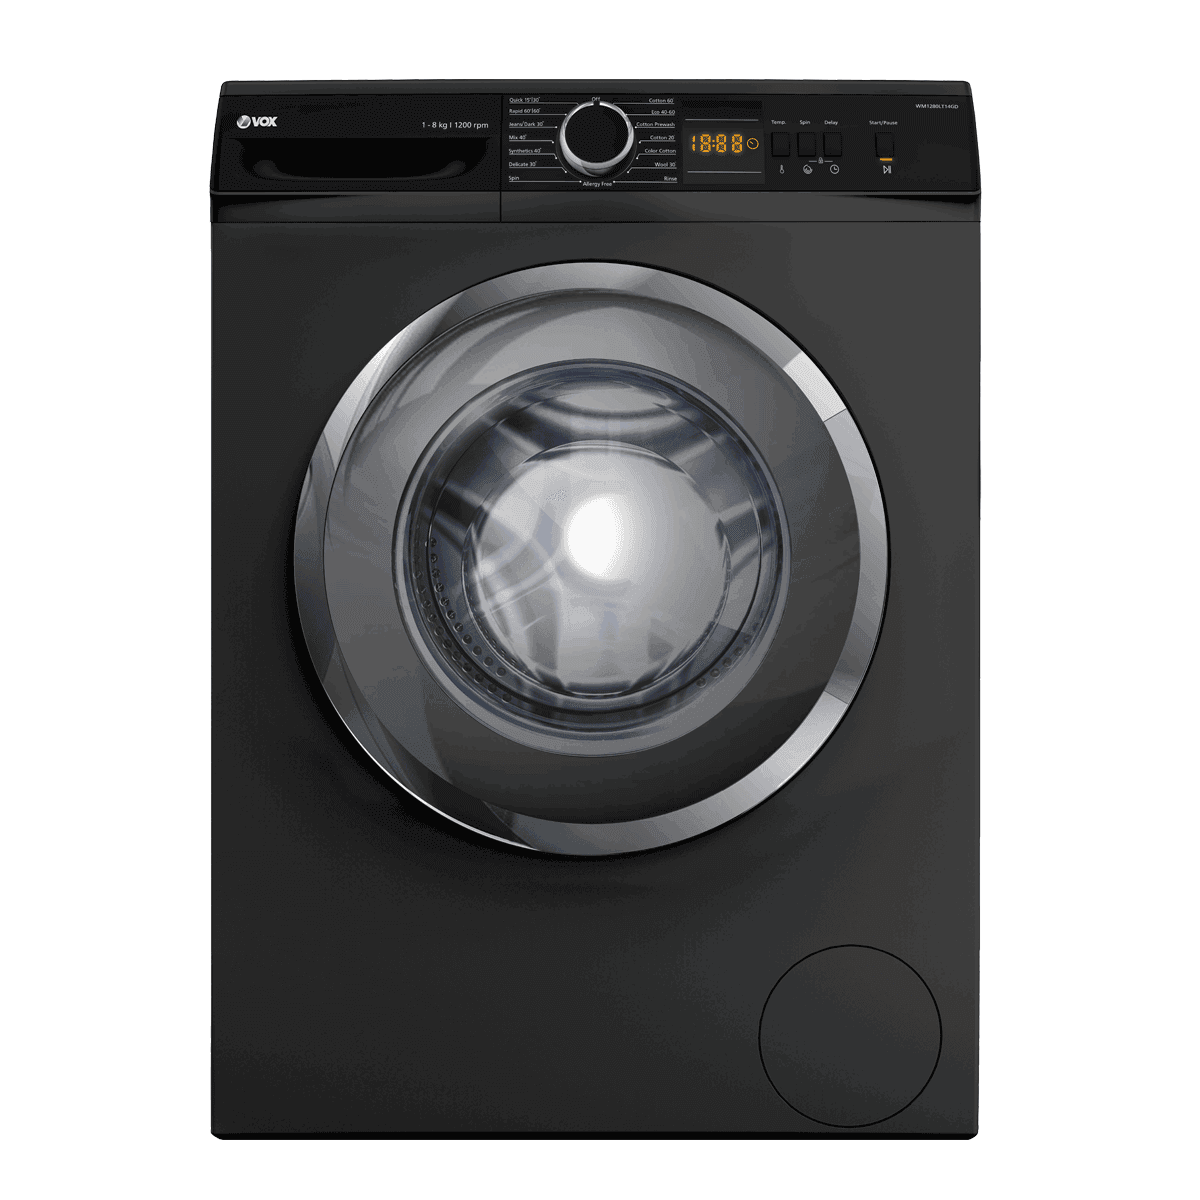 Selected image for VOX WM1280LT14GD Mašina za pranje veša, 8kg, 1200 obrtaja/min, 15 programa, Sivo-crna